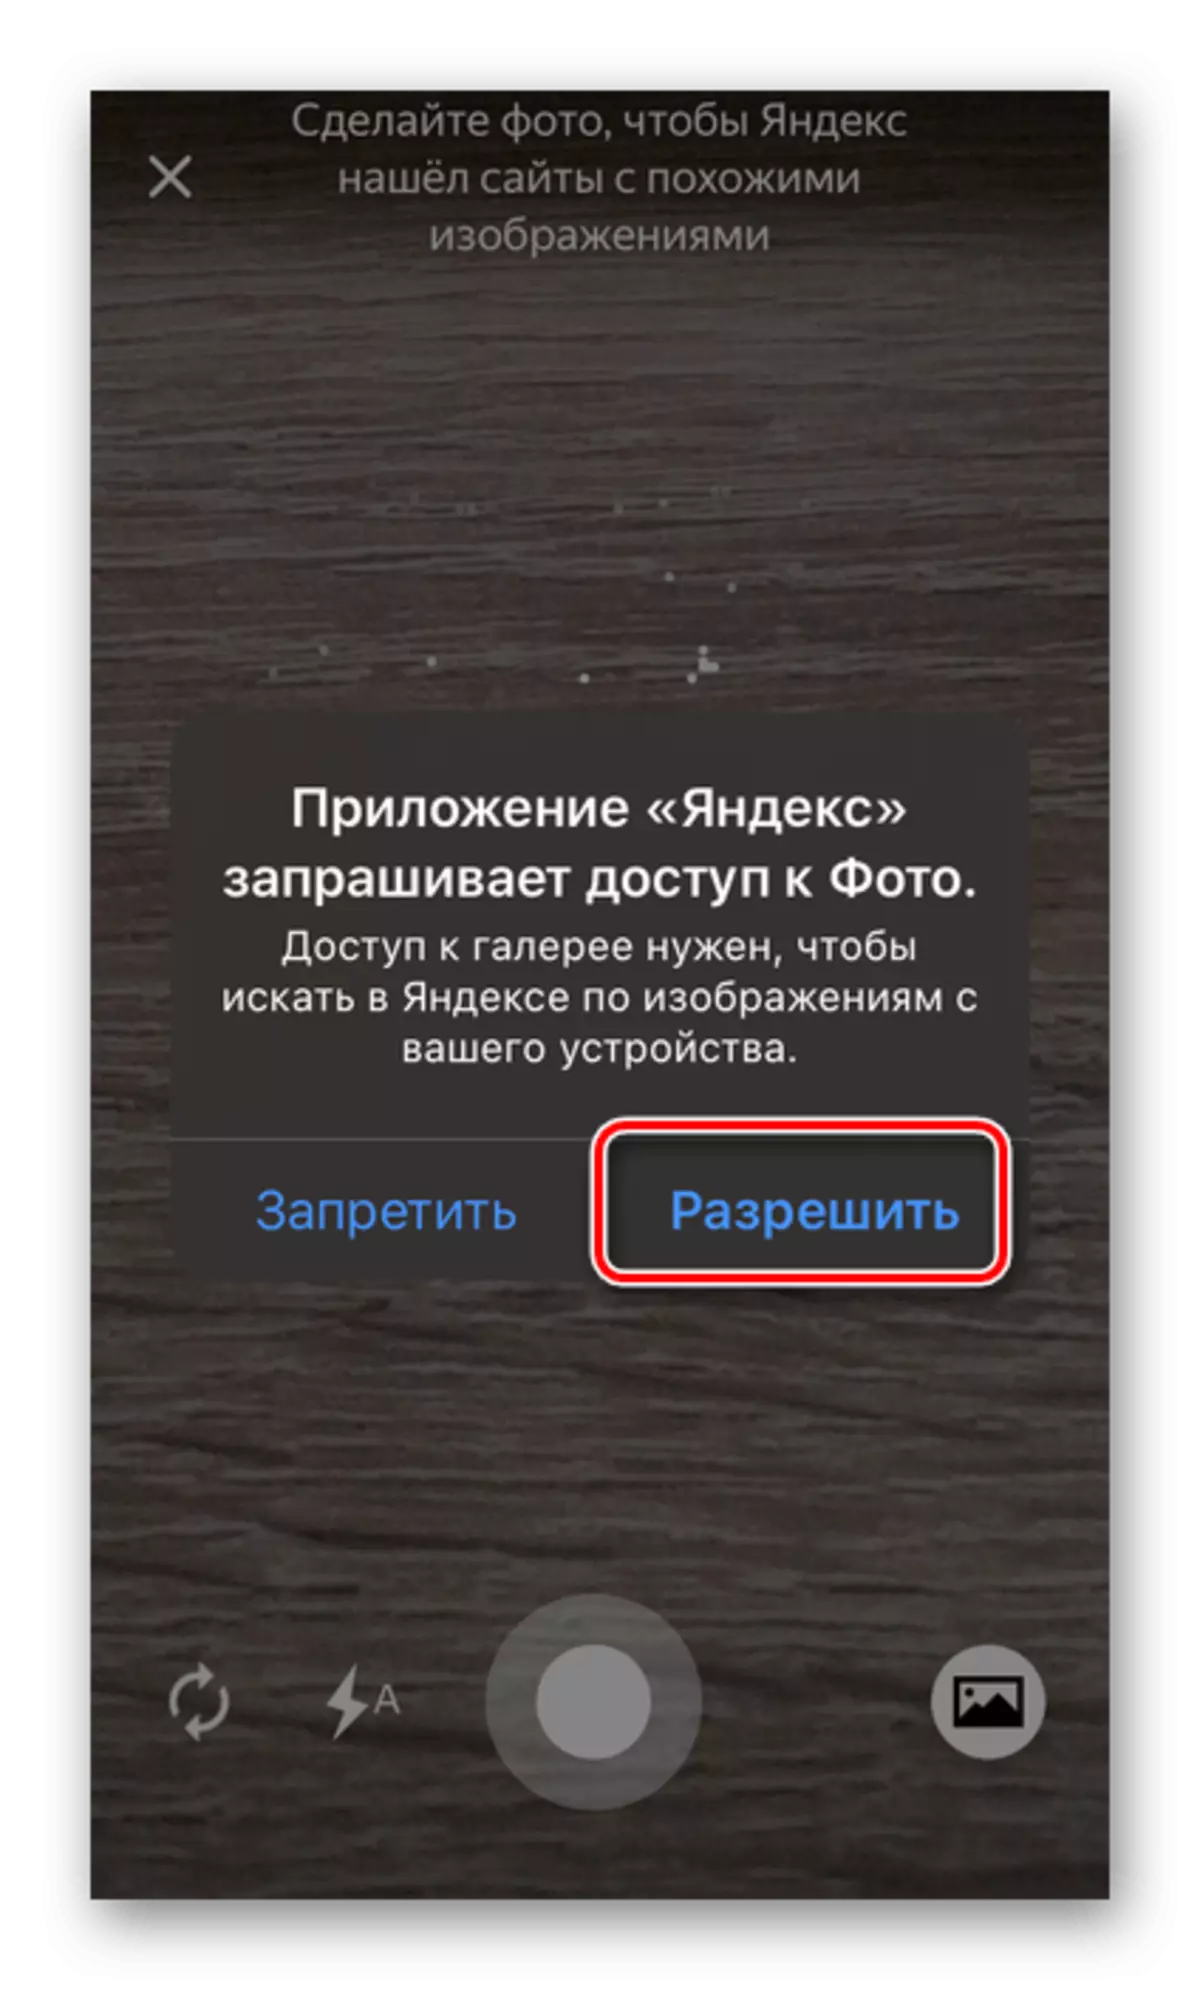 Permitir o acceso á foto na aplicación Yandex no teléfono